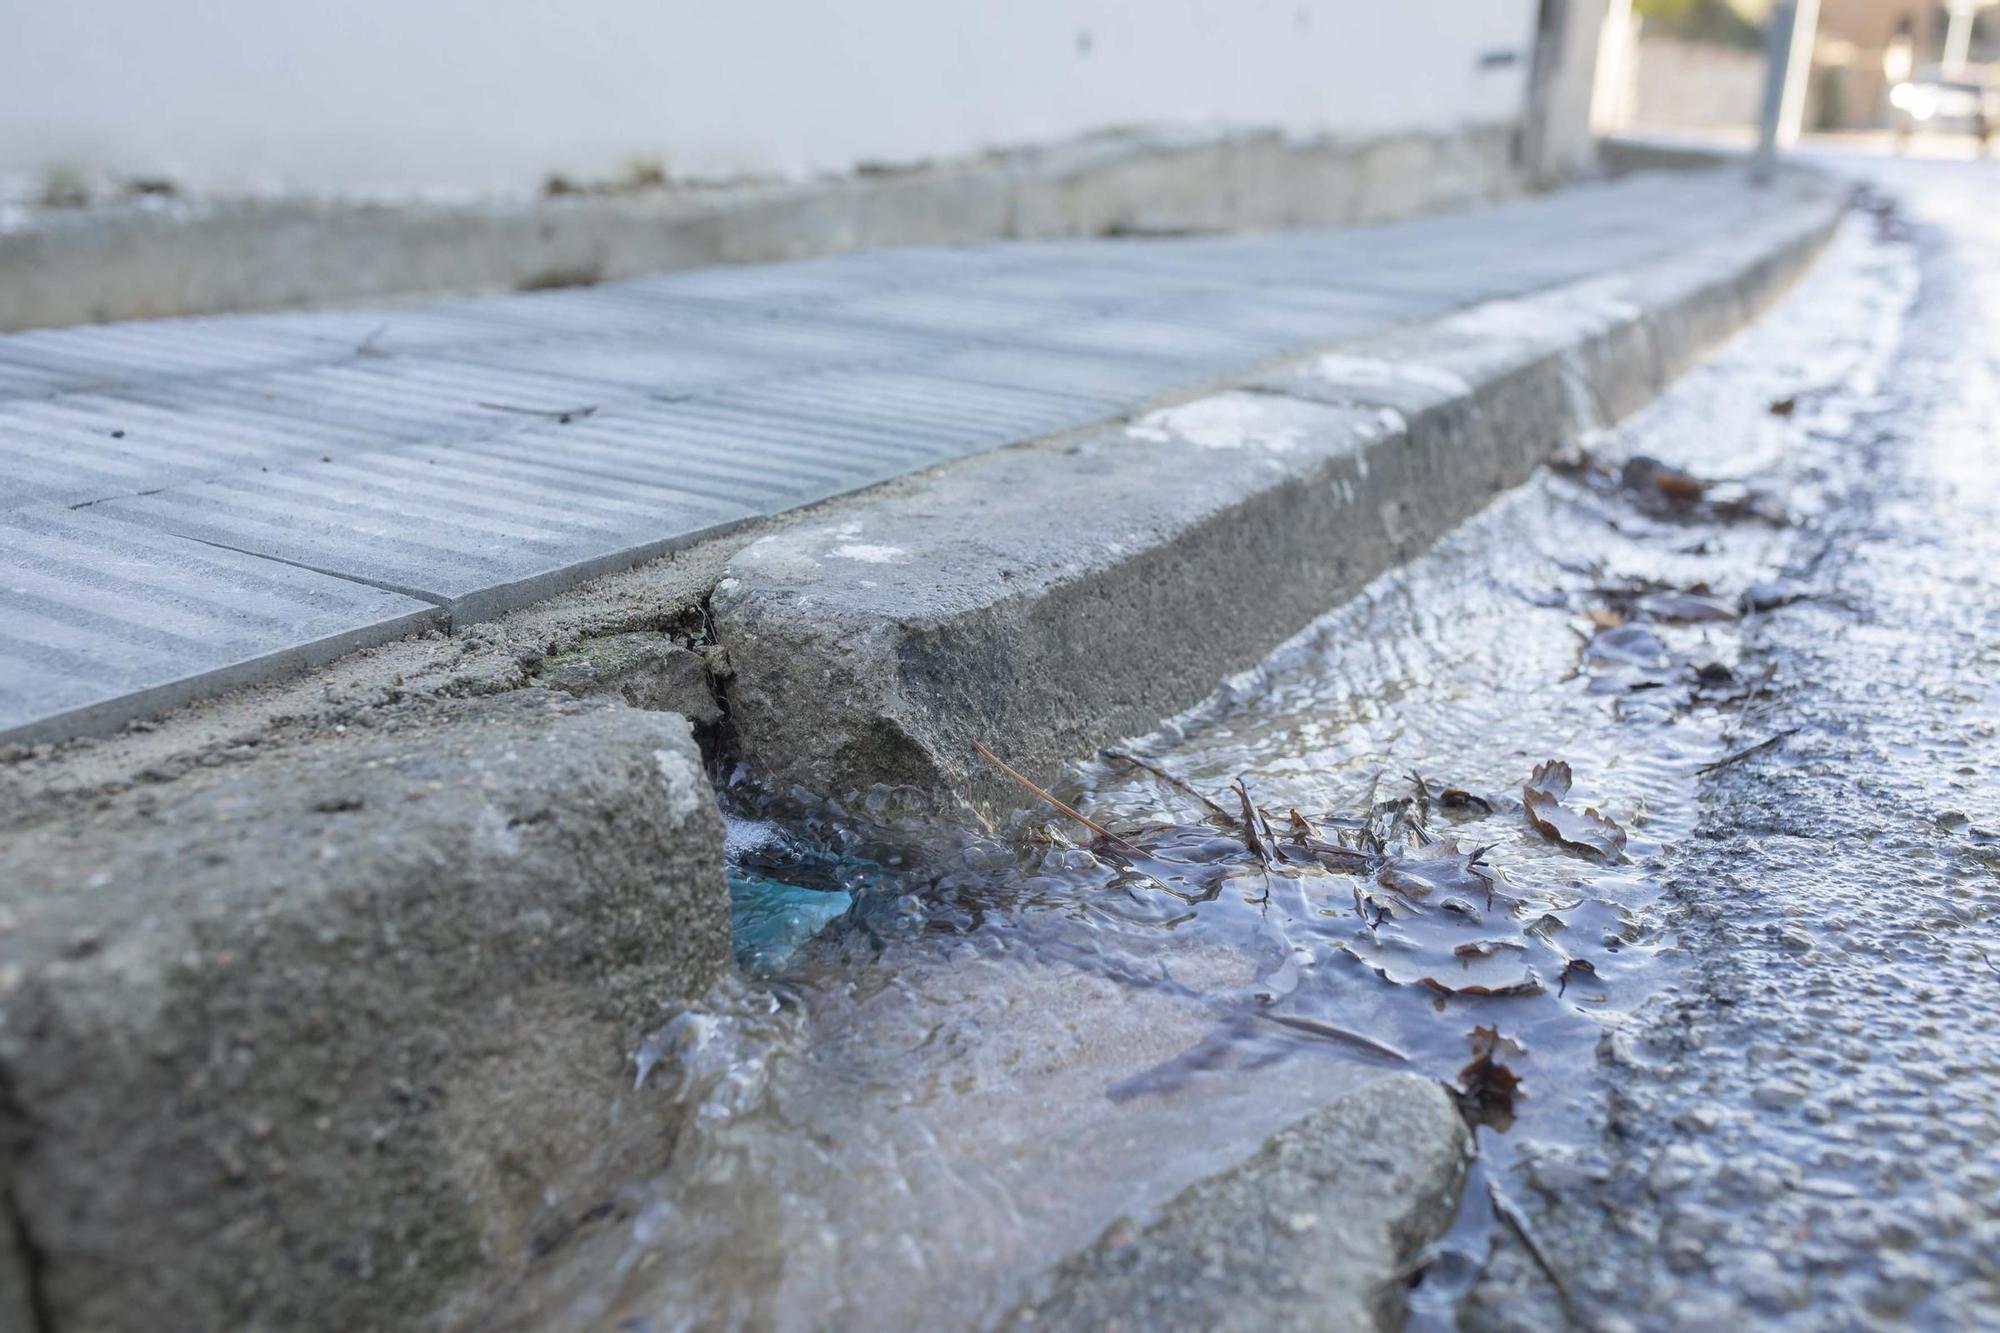 Galeria d'imatges: Veïns de Vidreres denuncien fuites d’aigua a les canonades en plena sequera